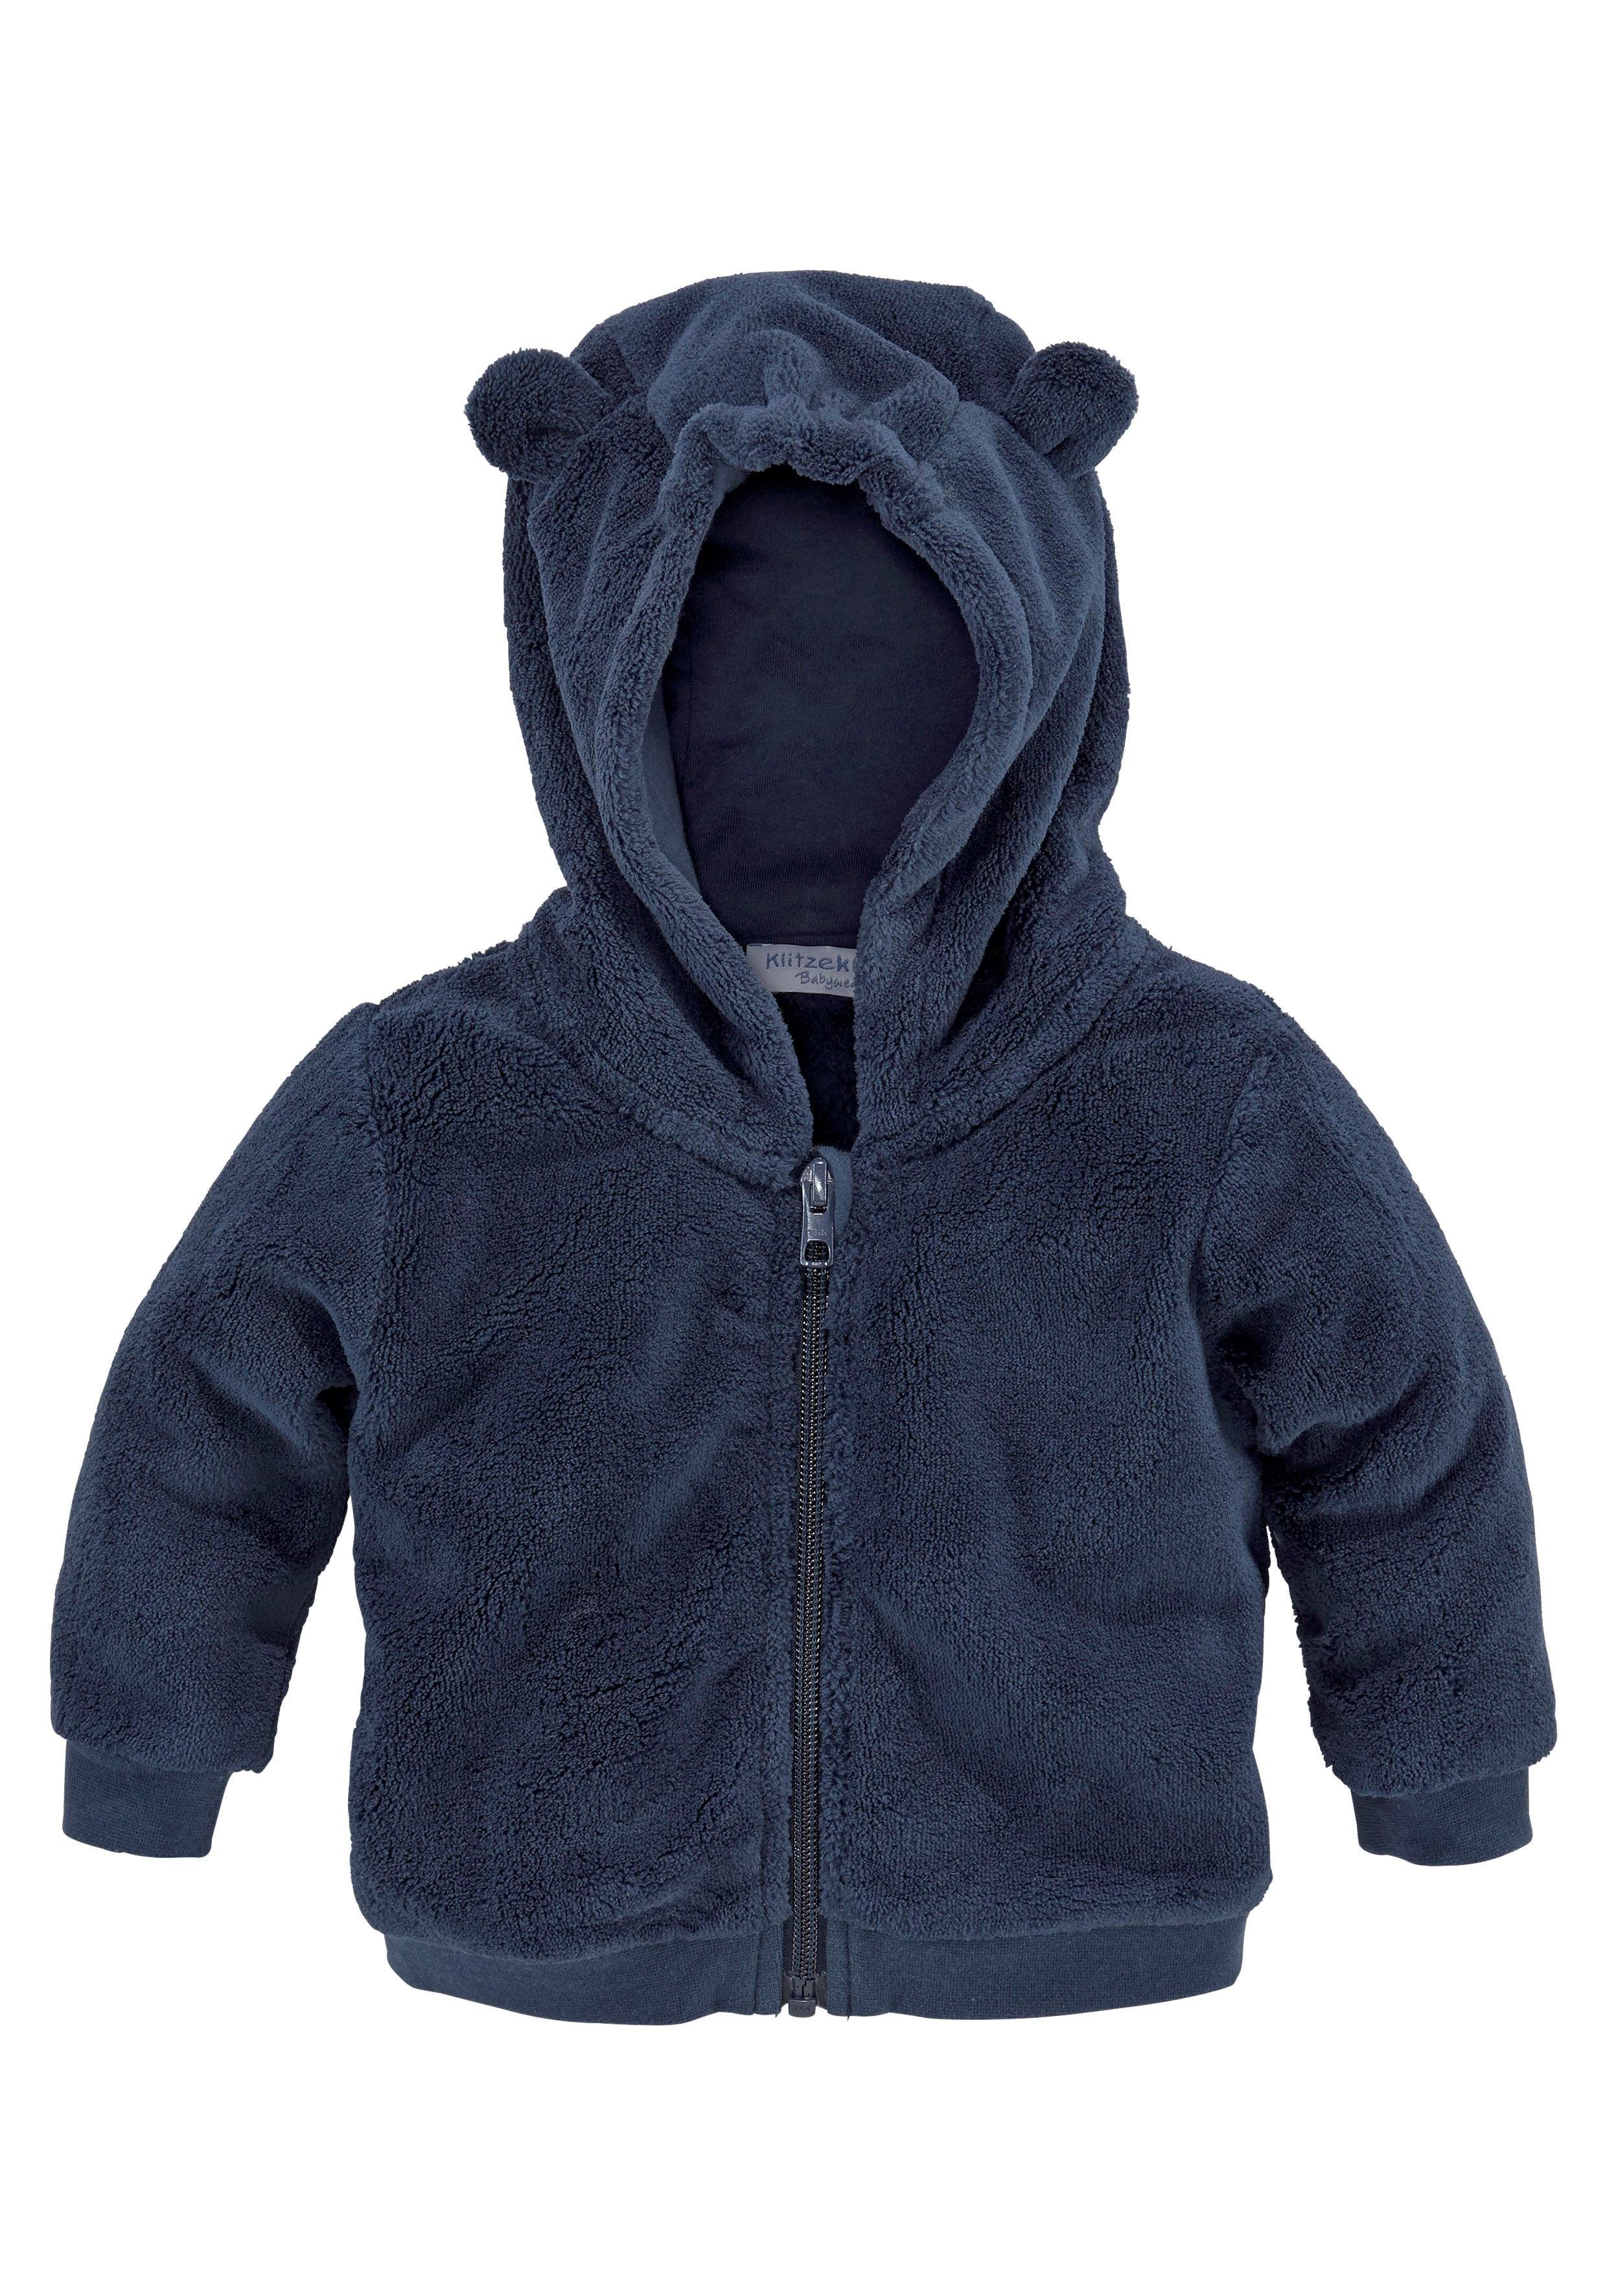 Baby Jungen Jacken online kaufen | OTTO